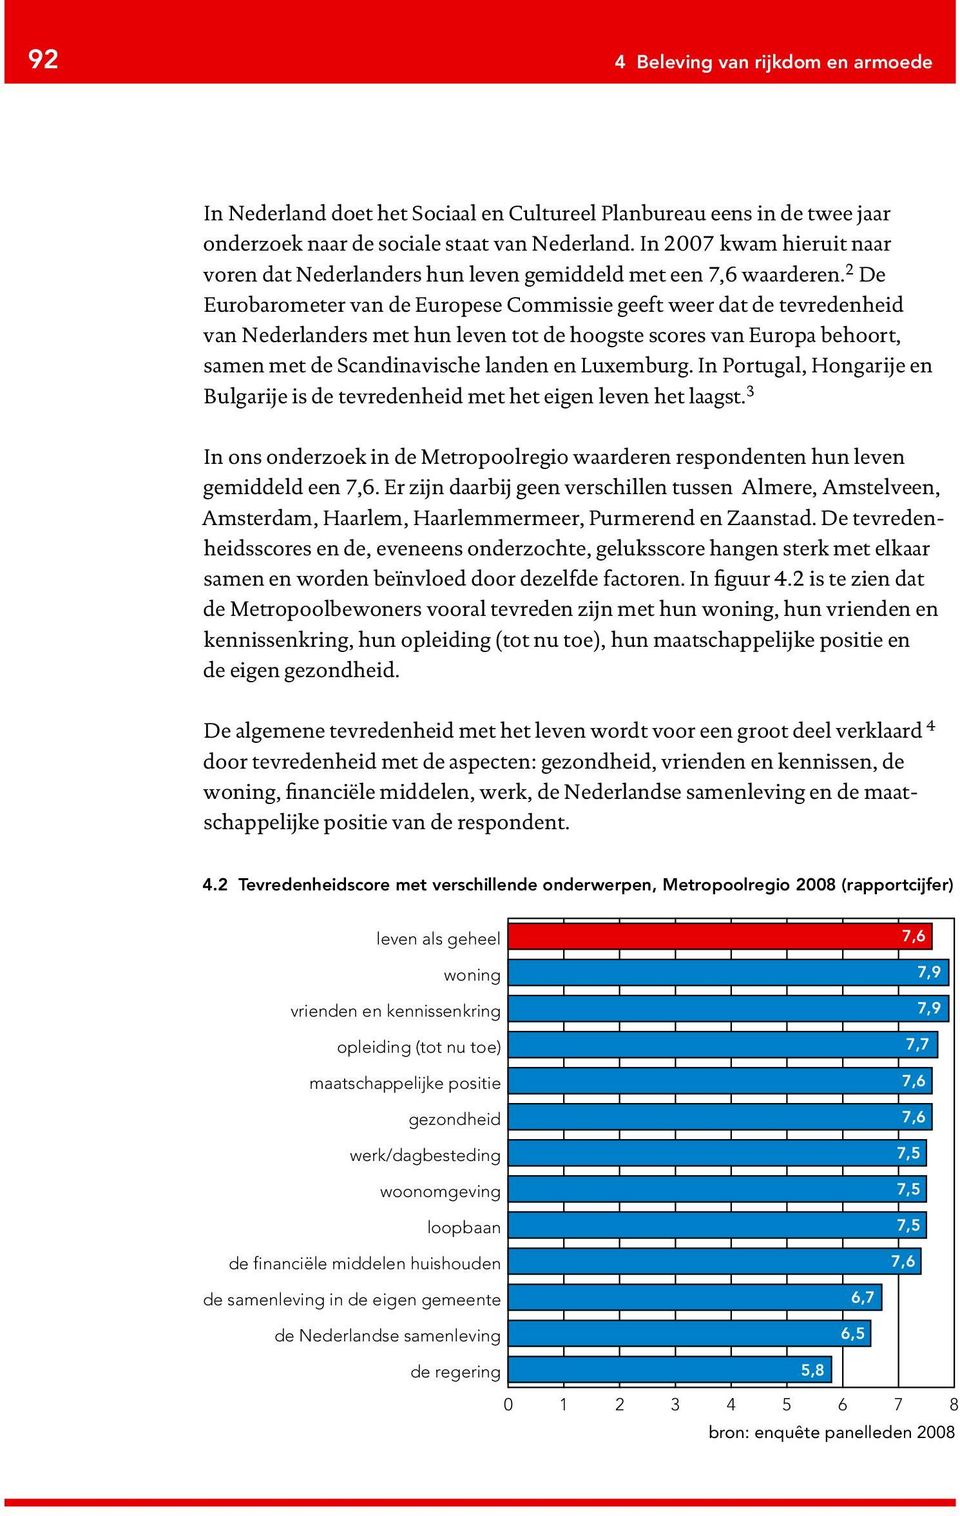 2 De Eurobarometer van de Europese Commissie geeft weer dat de tevredenheid van Nederlanders met hun leven tot de hoogste scores van Europa behoort, samen met de Scandinavische landen en Luxemburg.